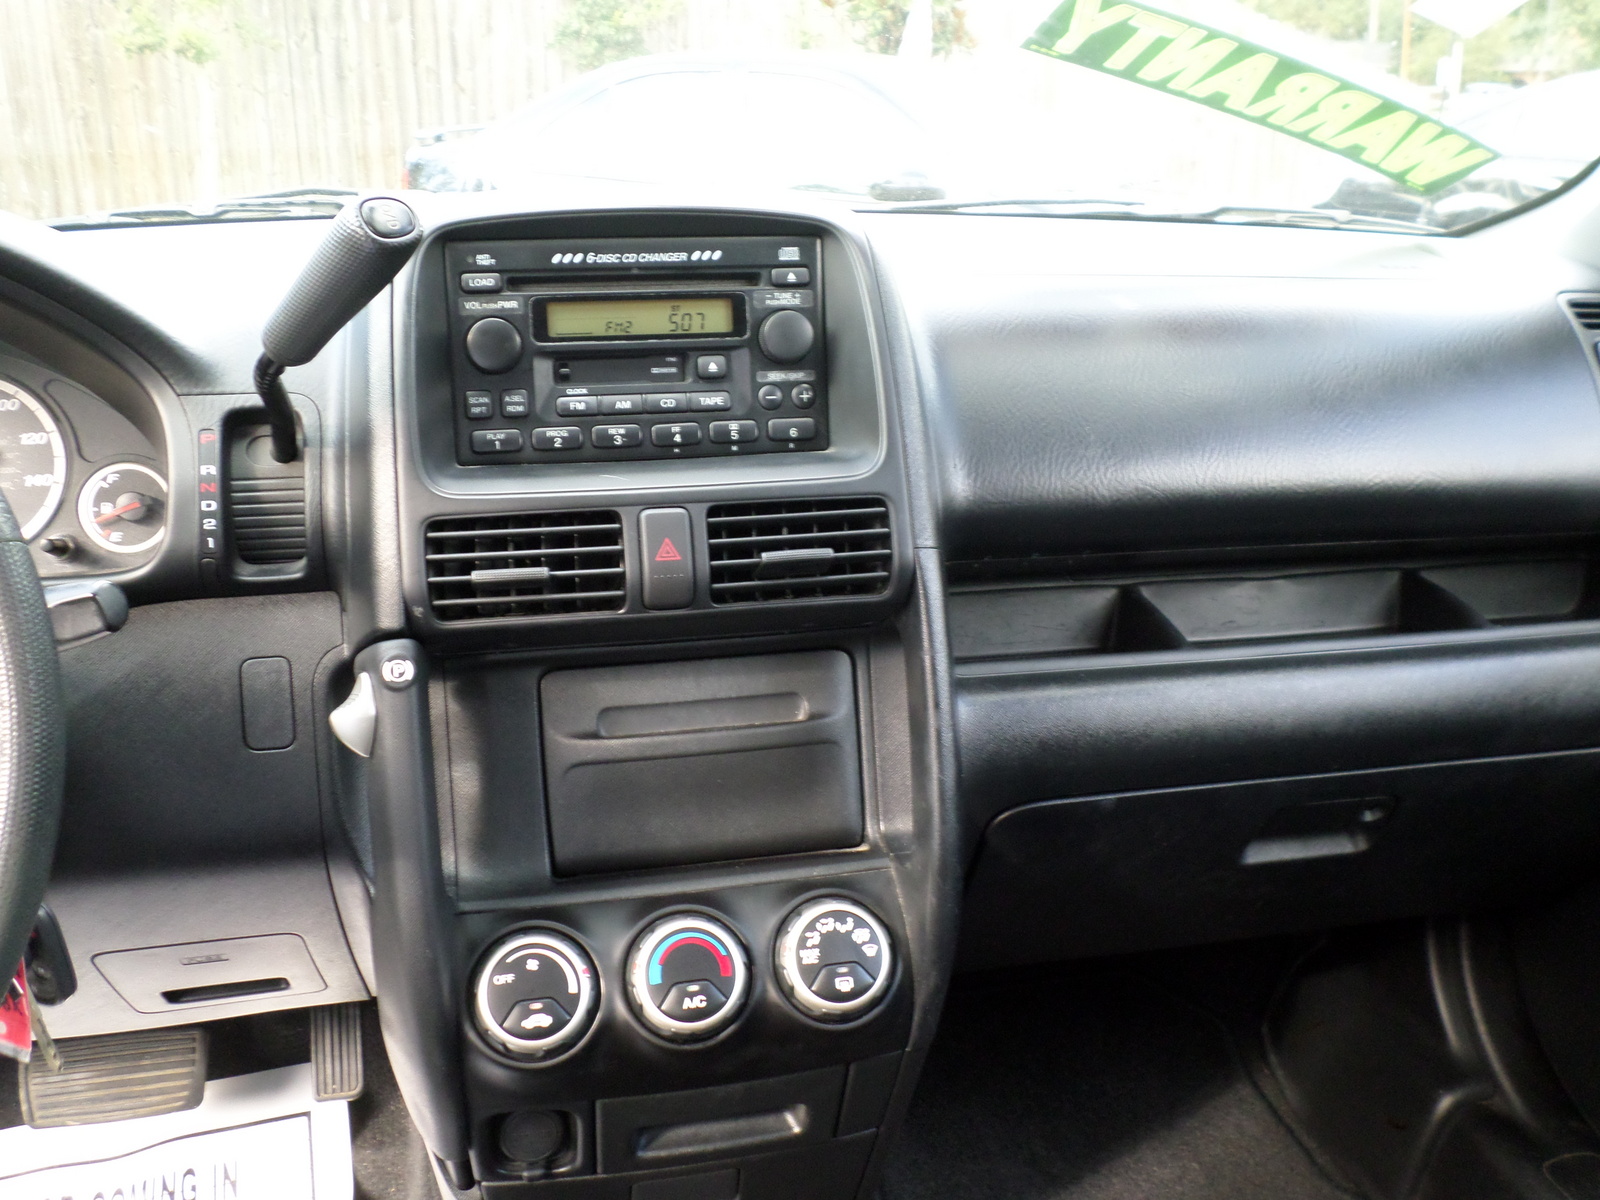 Honda crv 2004 interior pictures